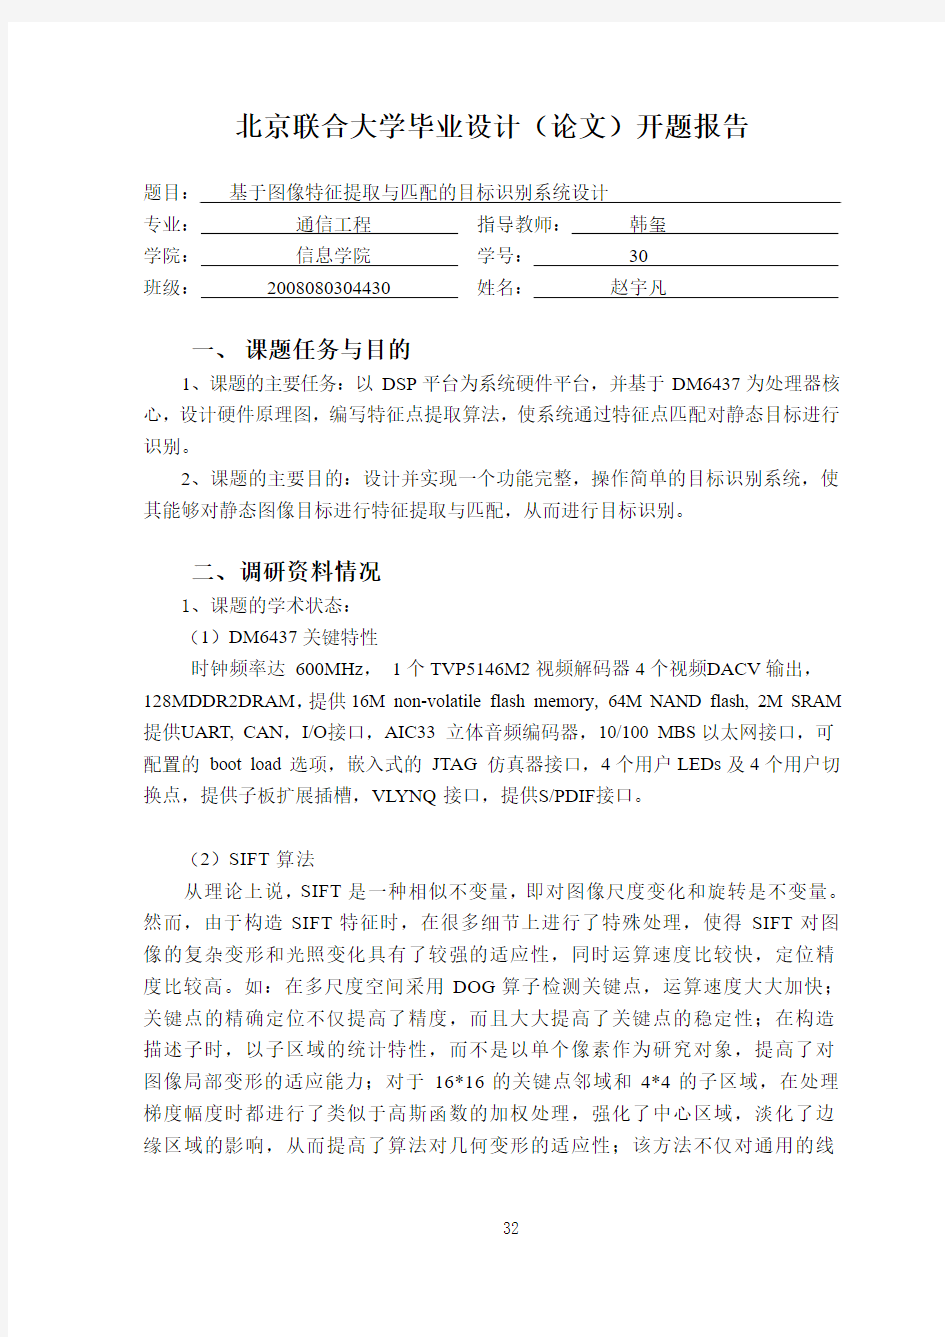 赵宇凡开题报告-基于图像特征提取与匹配的目标识别系统设计